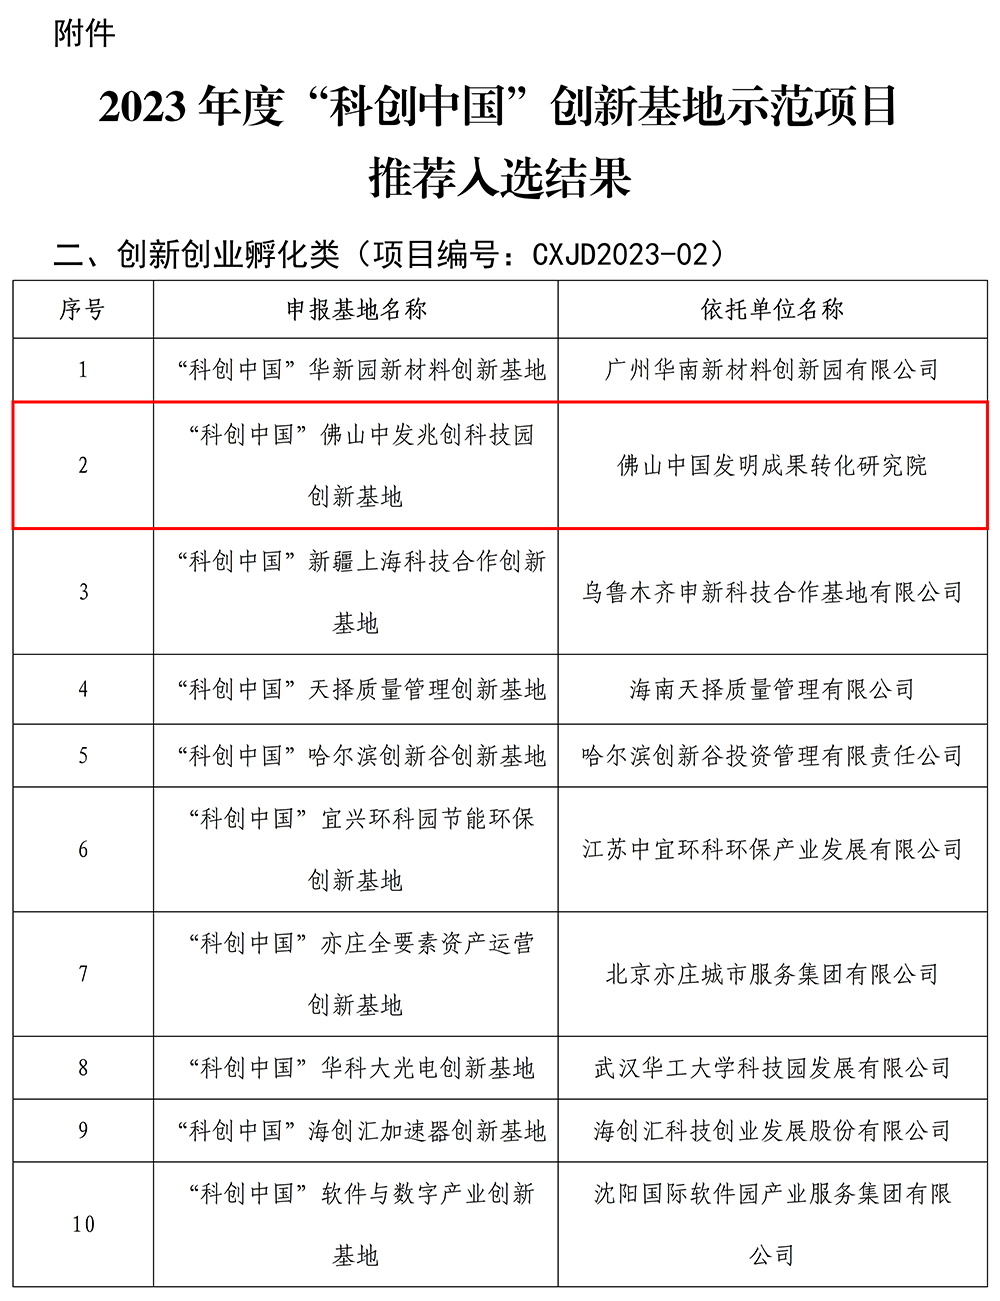 2023年度“科创中国”创新基地示范项目推荐入选结果_01.png